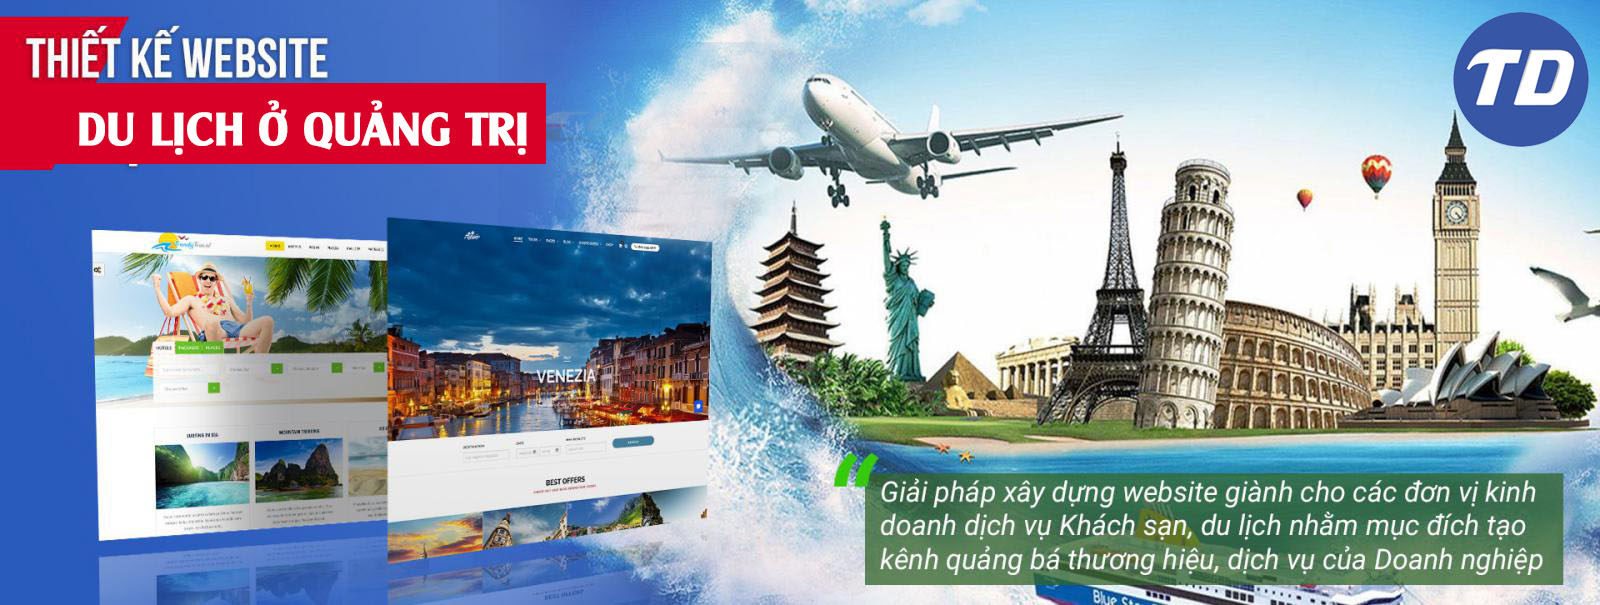 Địa chỉ thiết kế website du lịch ở Quảng Trị chất lượng